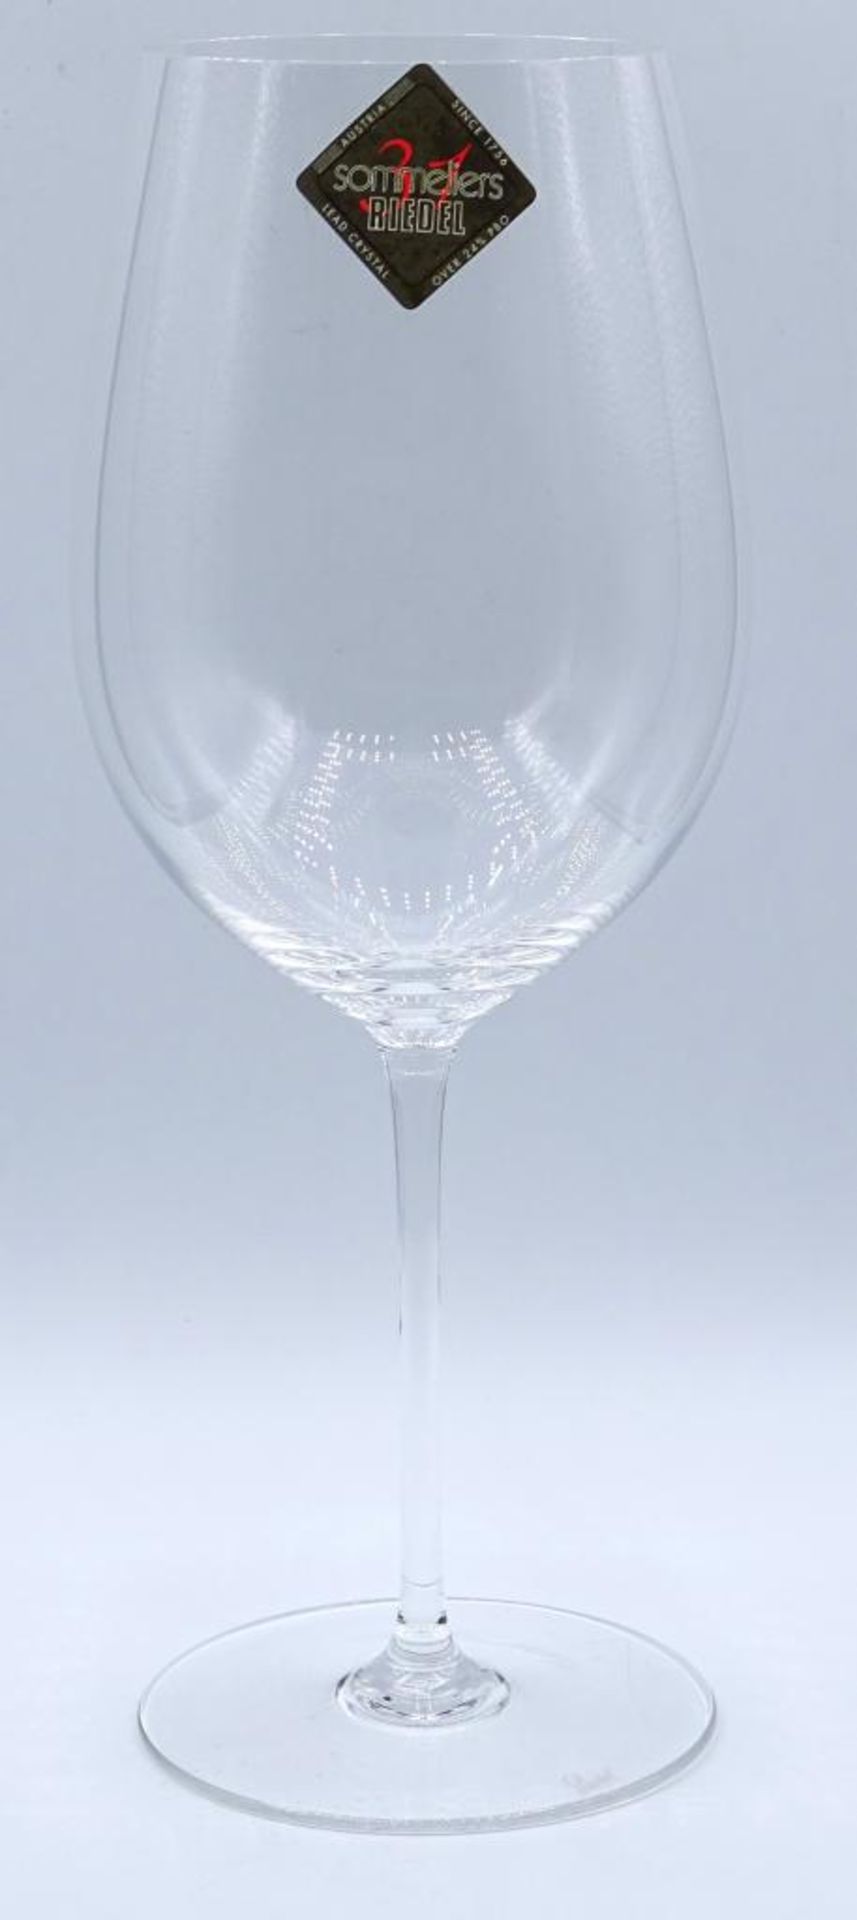 Riedel-Weinglas Serie Sommelier Grand Cru, neu im Karton, - Bild 5 aus 7